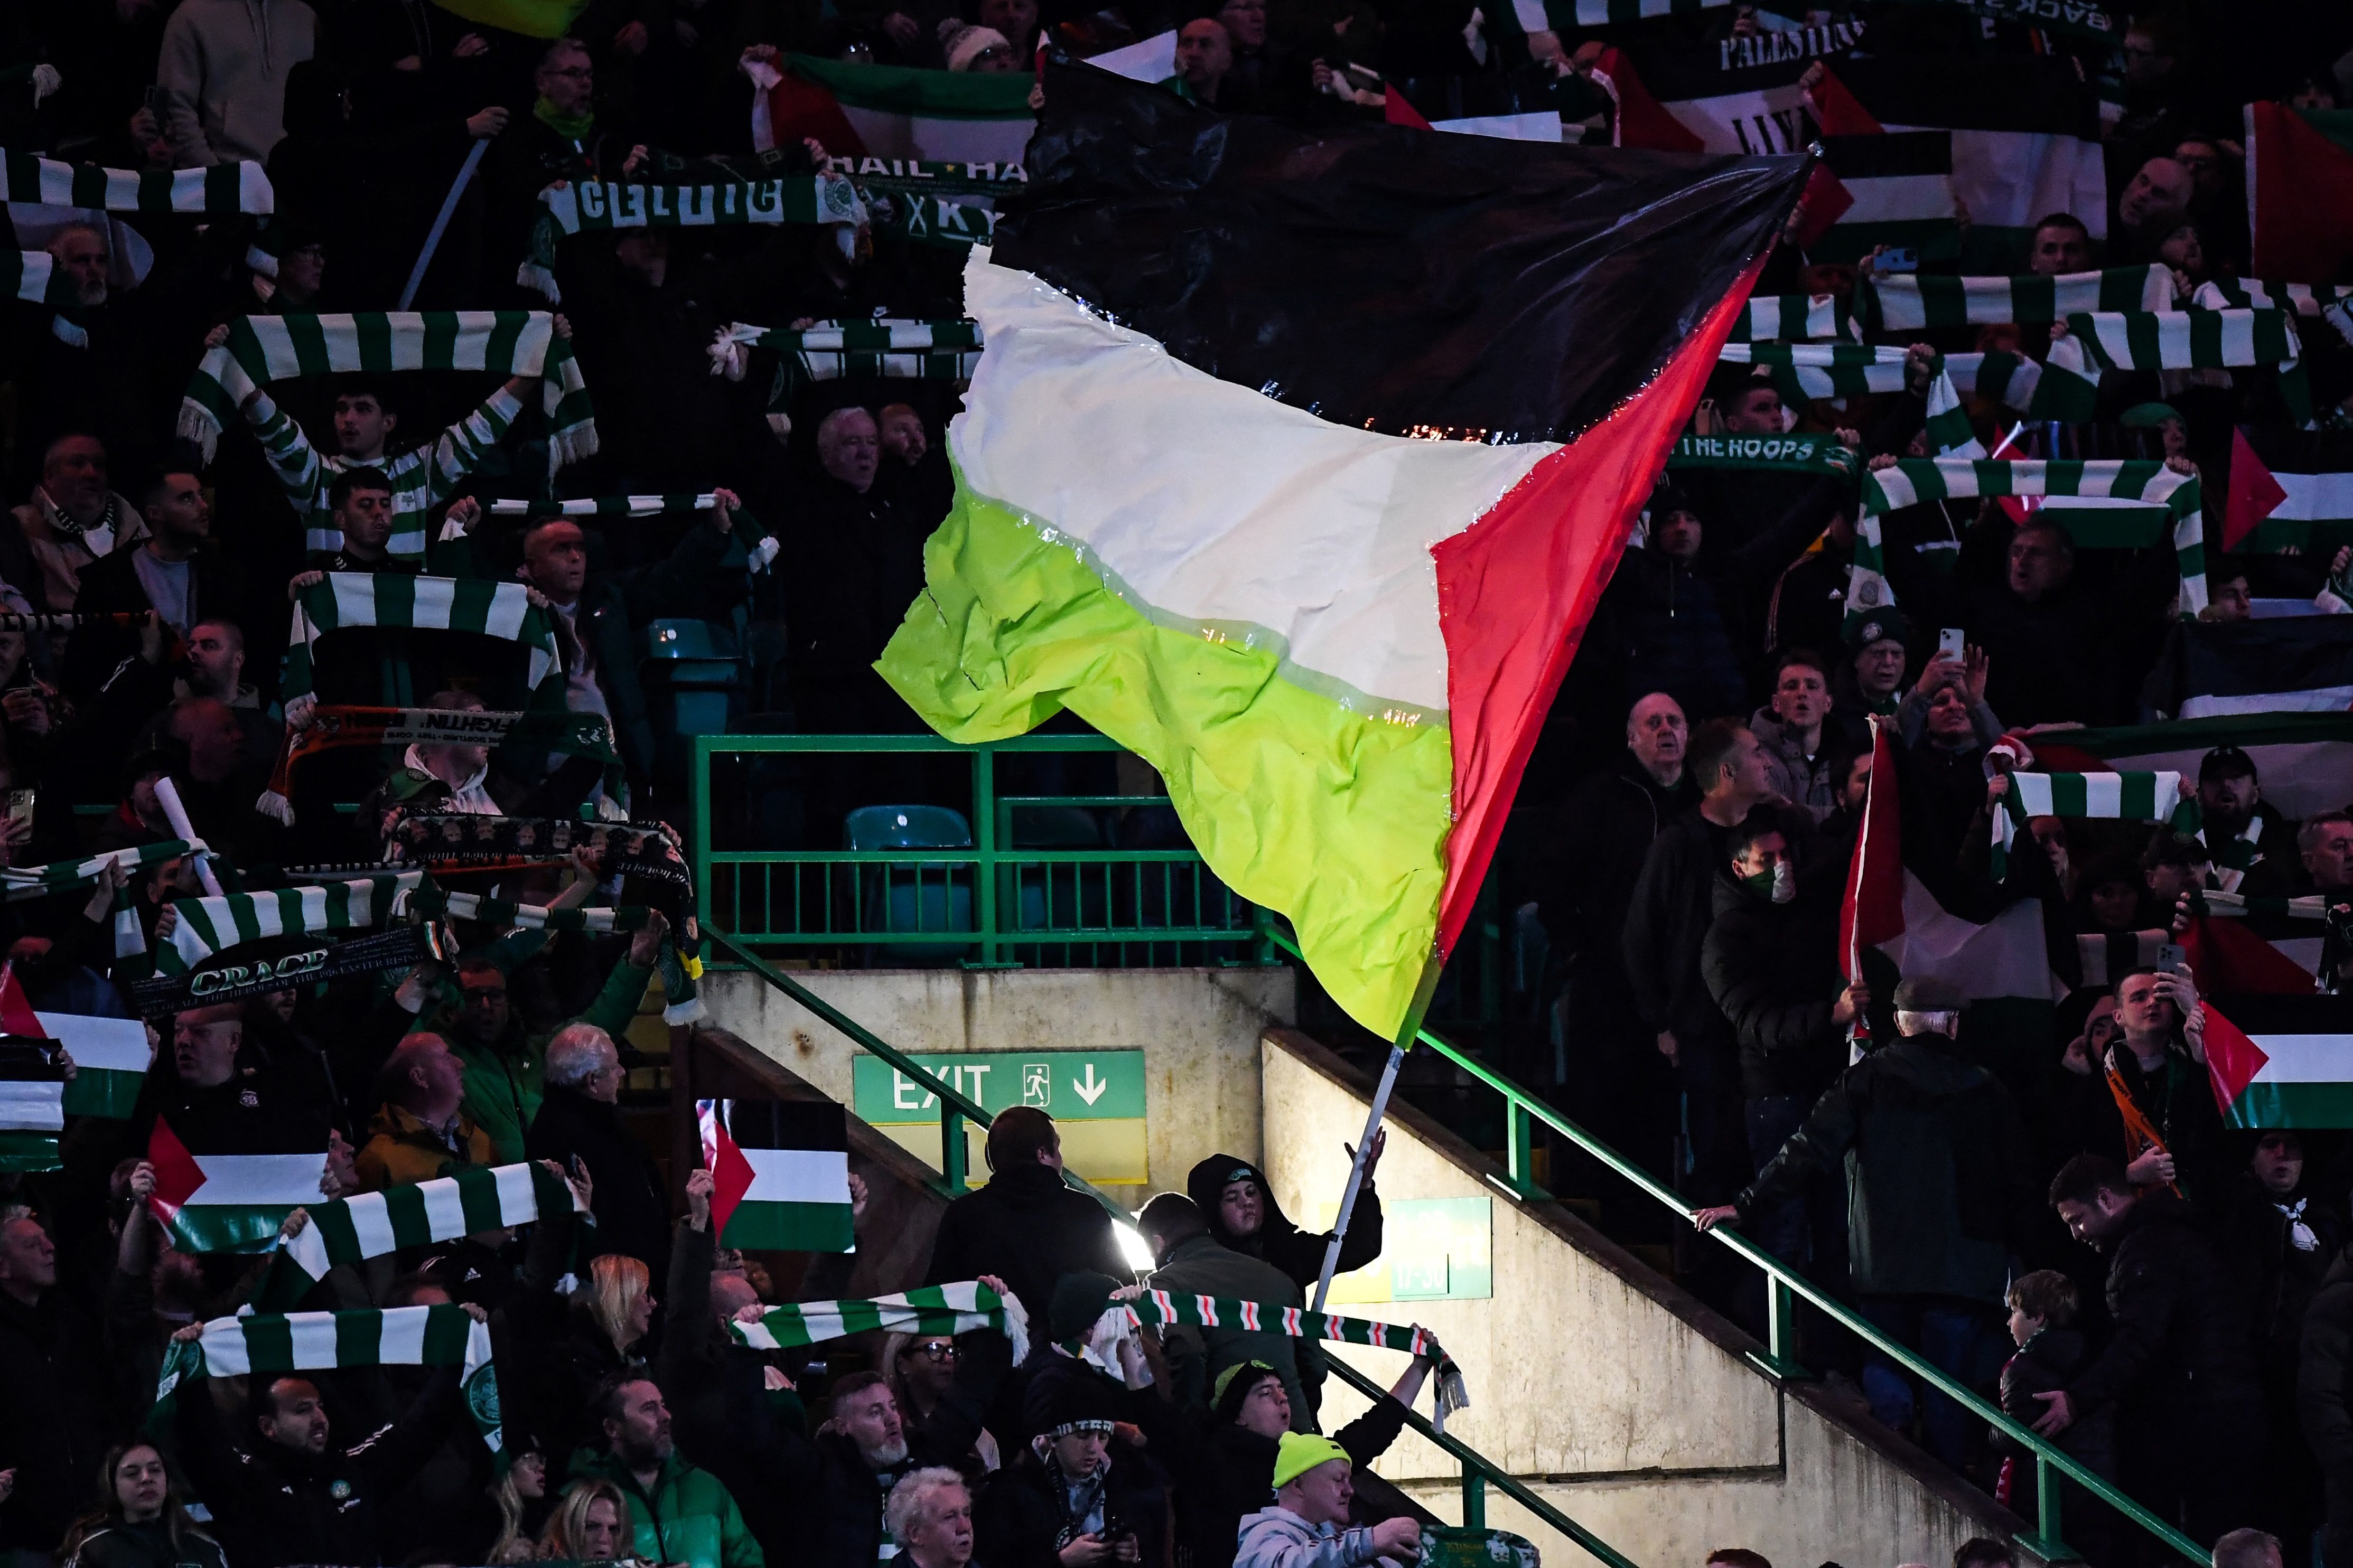 Palestine flags were displayed too